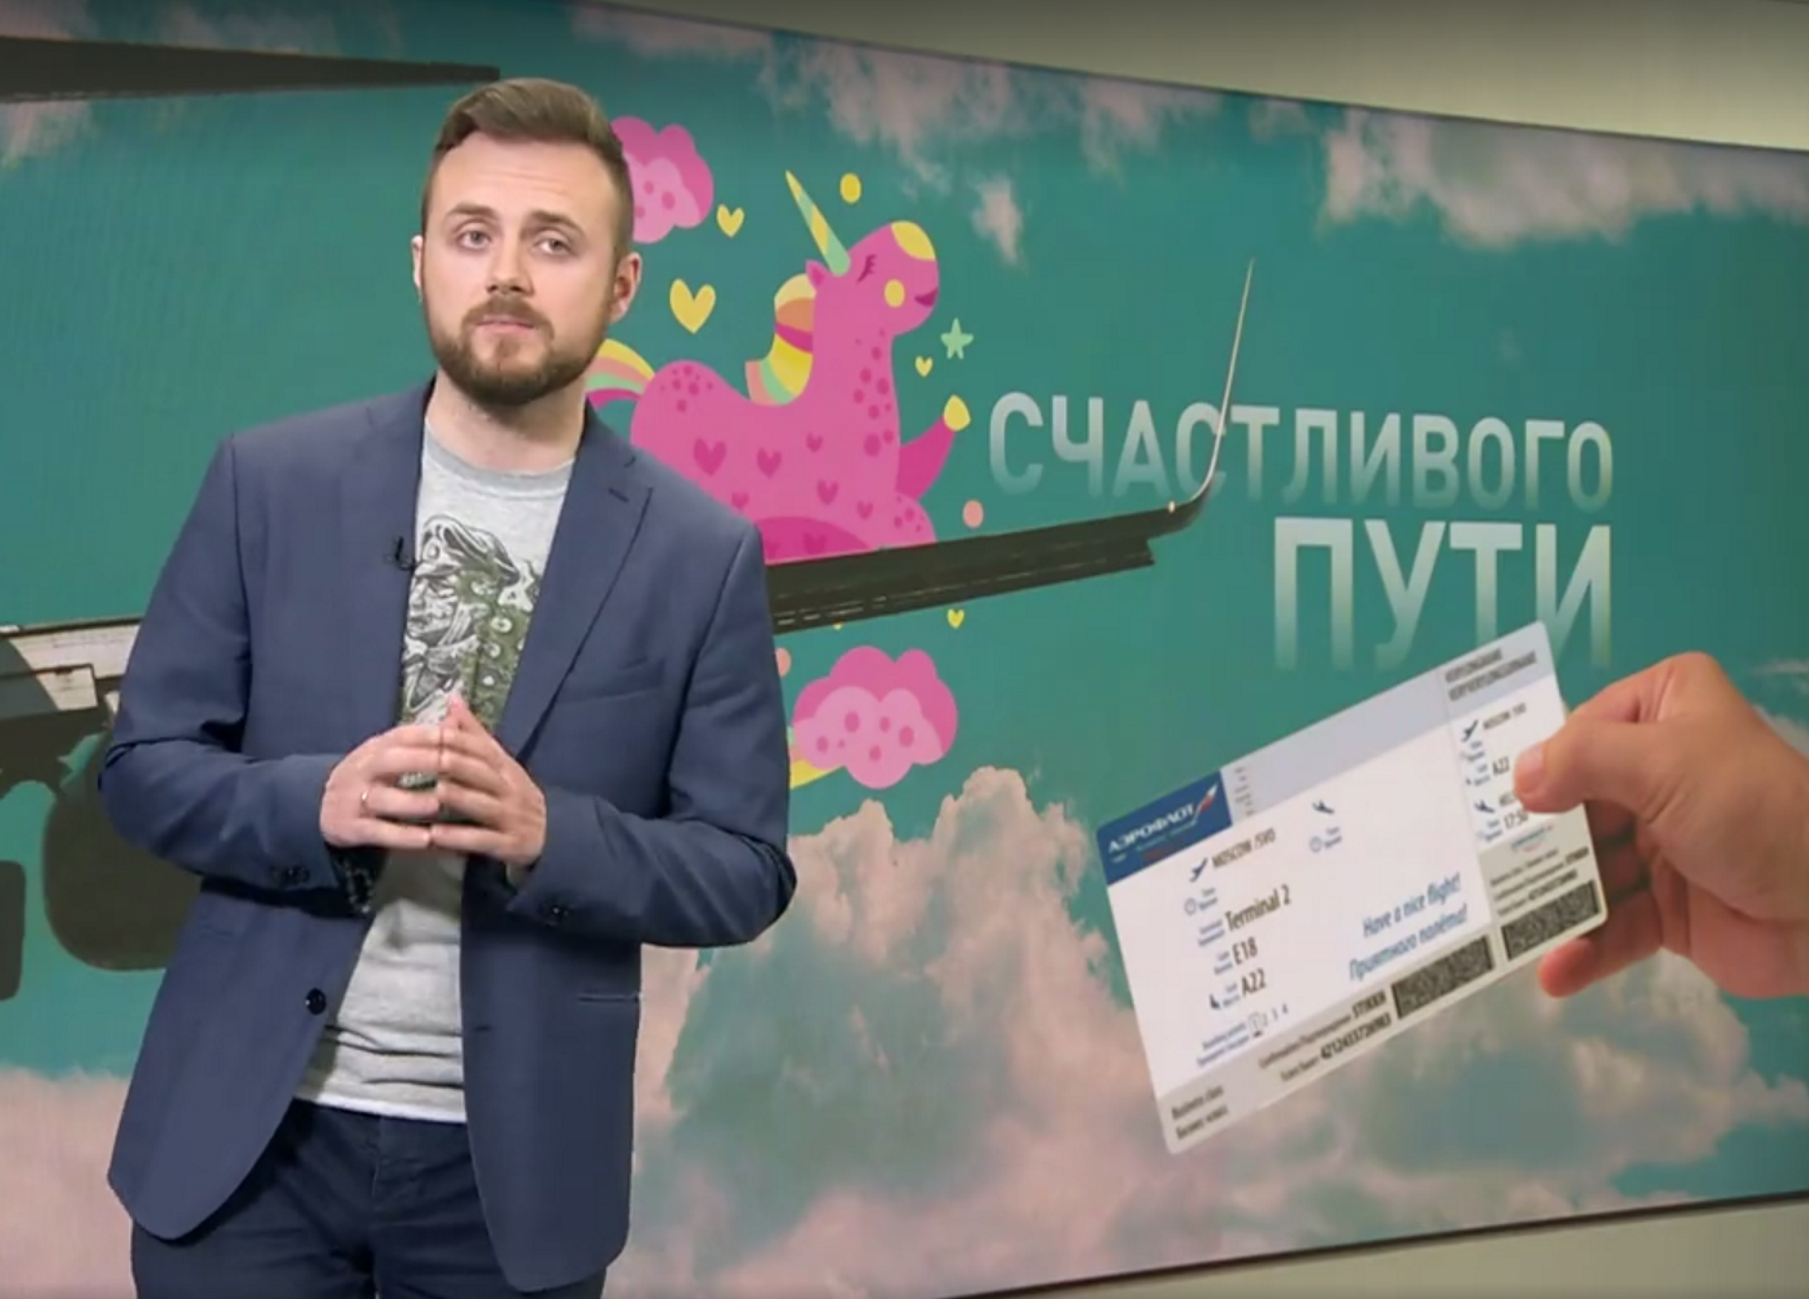 Una televisión rusa ofrece billetes de avión a los gays que quieran marcharse del país